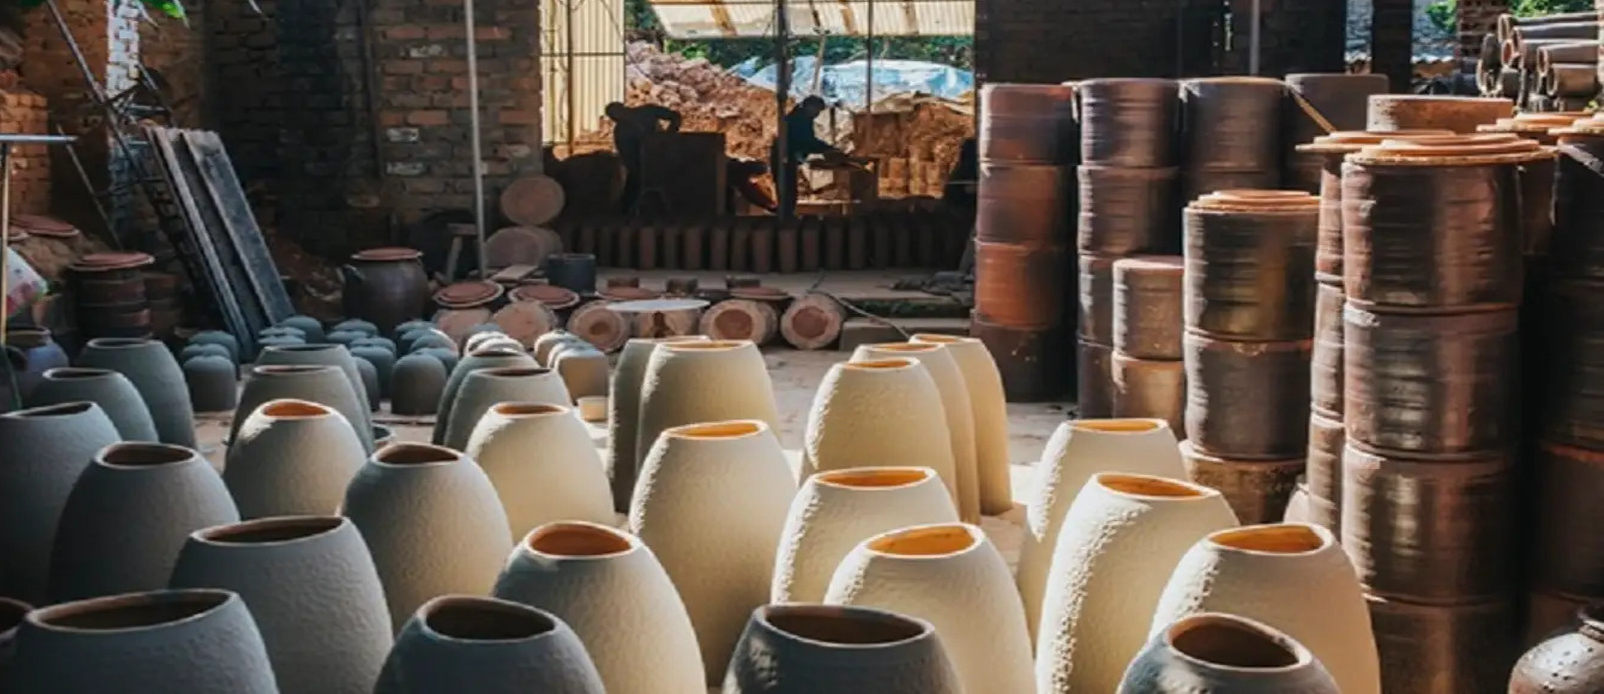 phu-lang-pottery-village-and-dai-bai-traditional